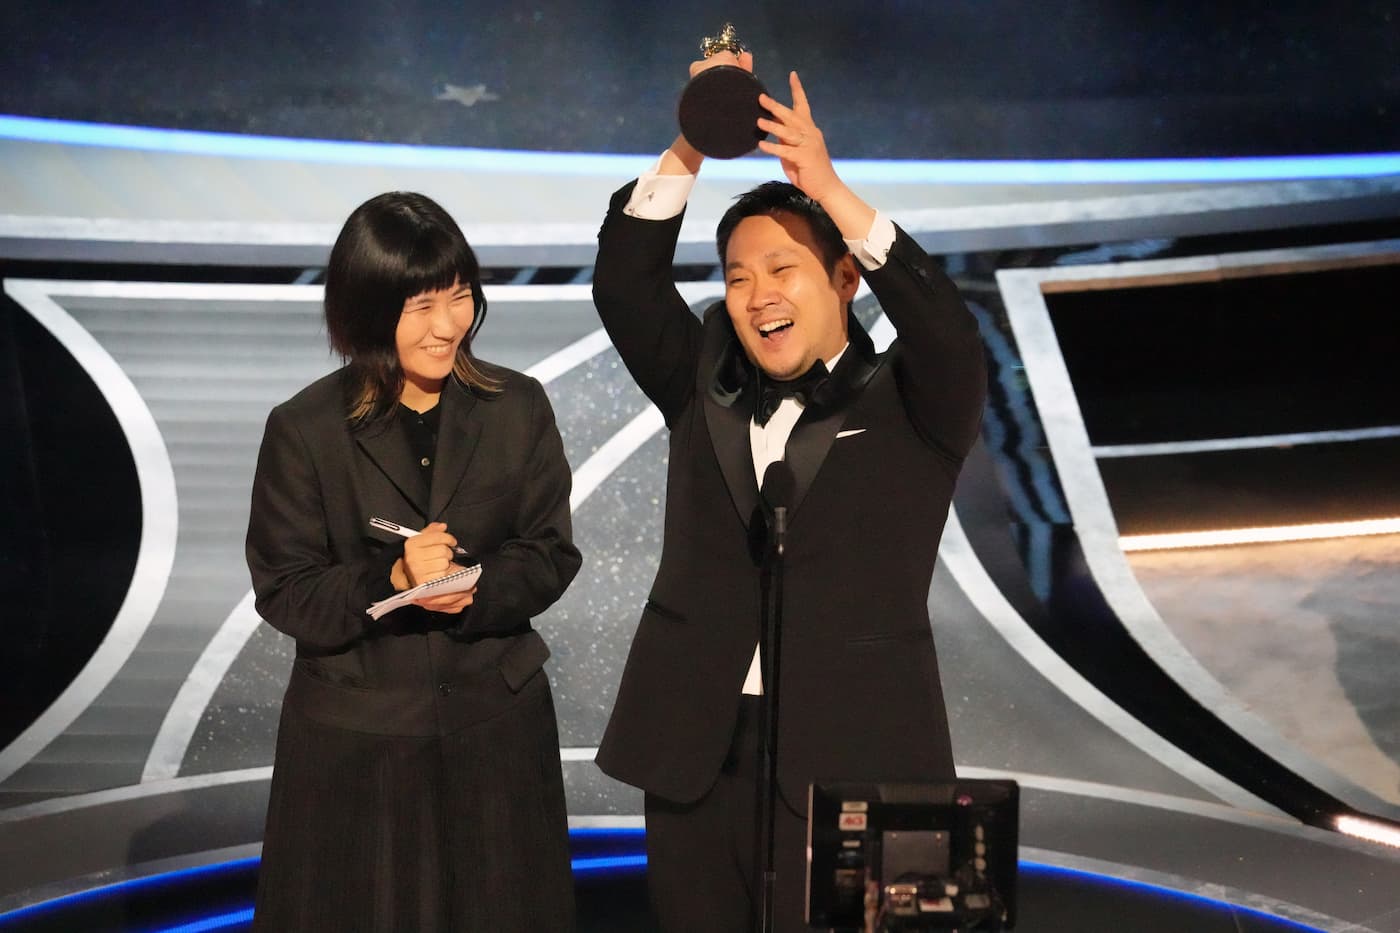 『ドライブ・マイ・カー』のオスカー受賞は日本映画の緩やかな復活